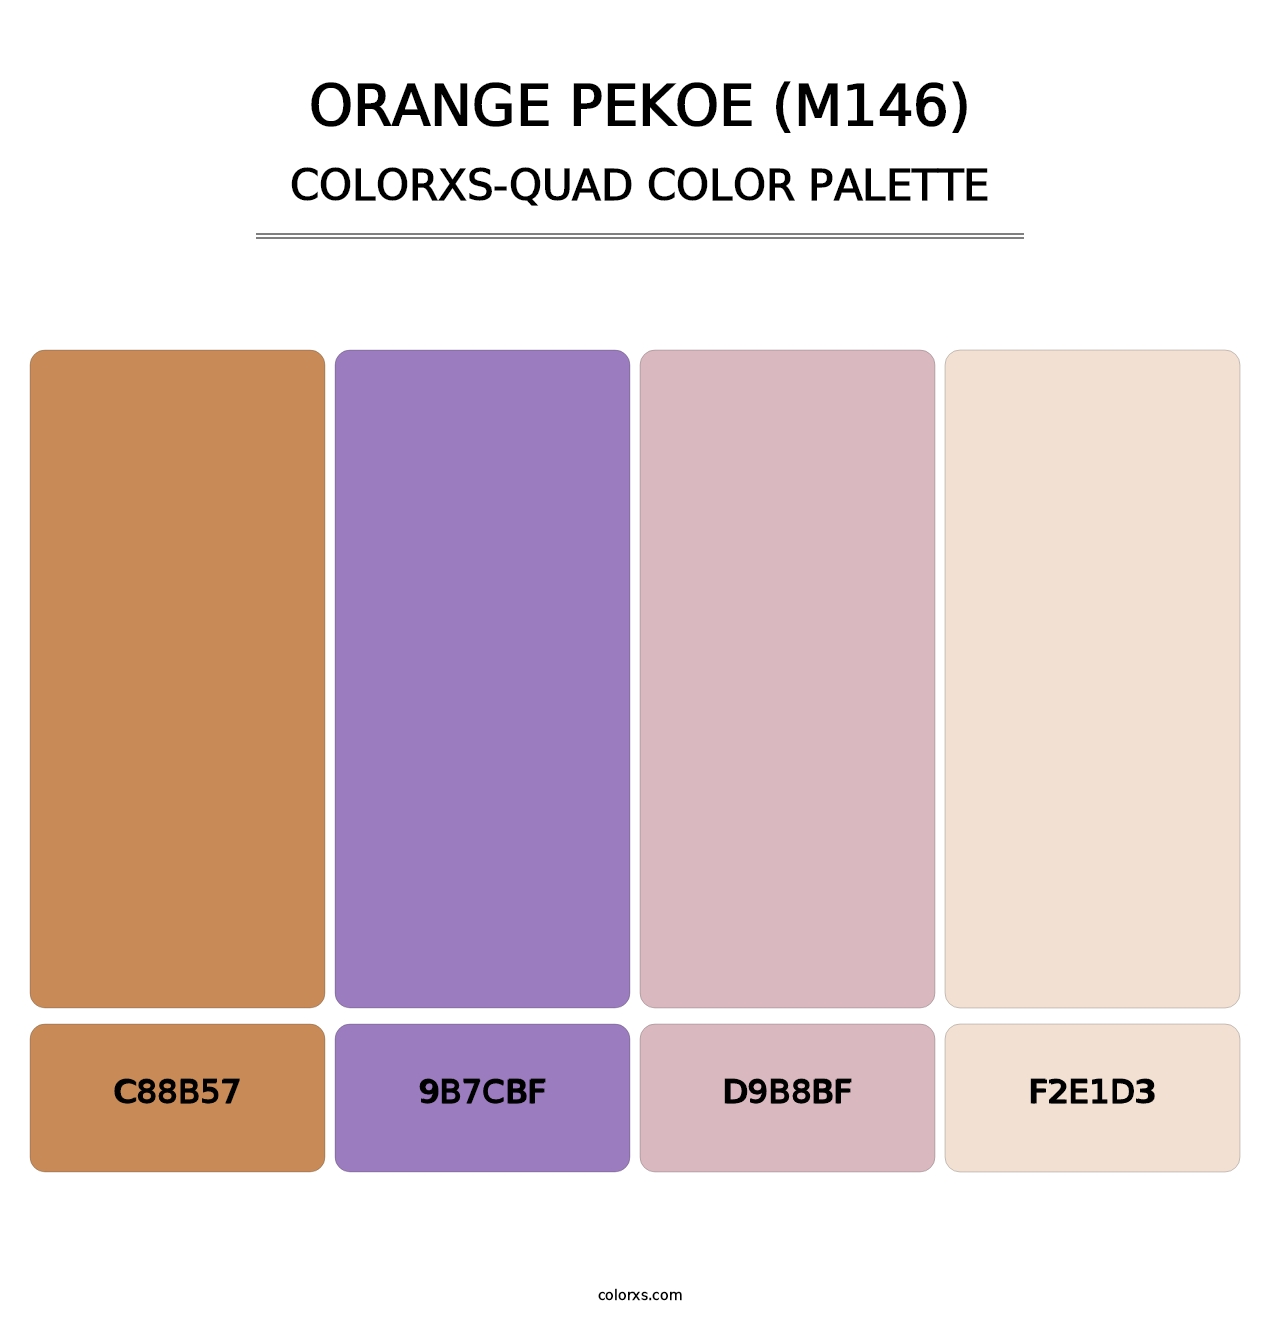 Orange Pekoe (M146) - Colorxs Quad Palette